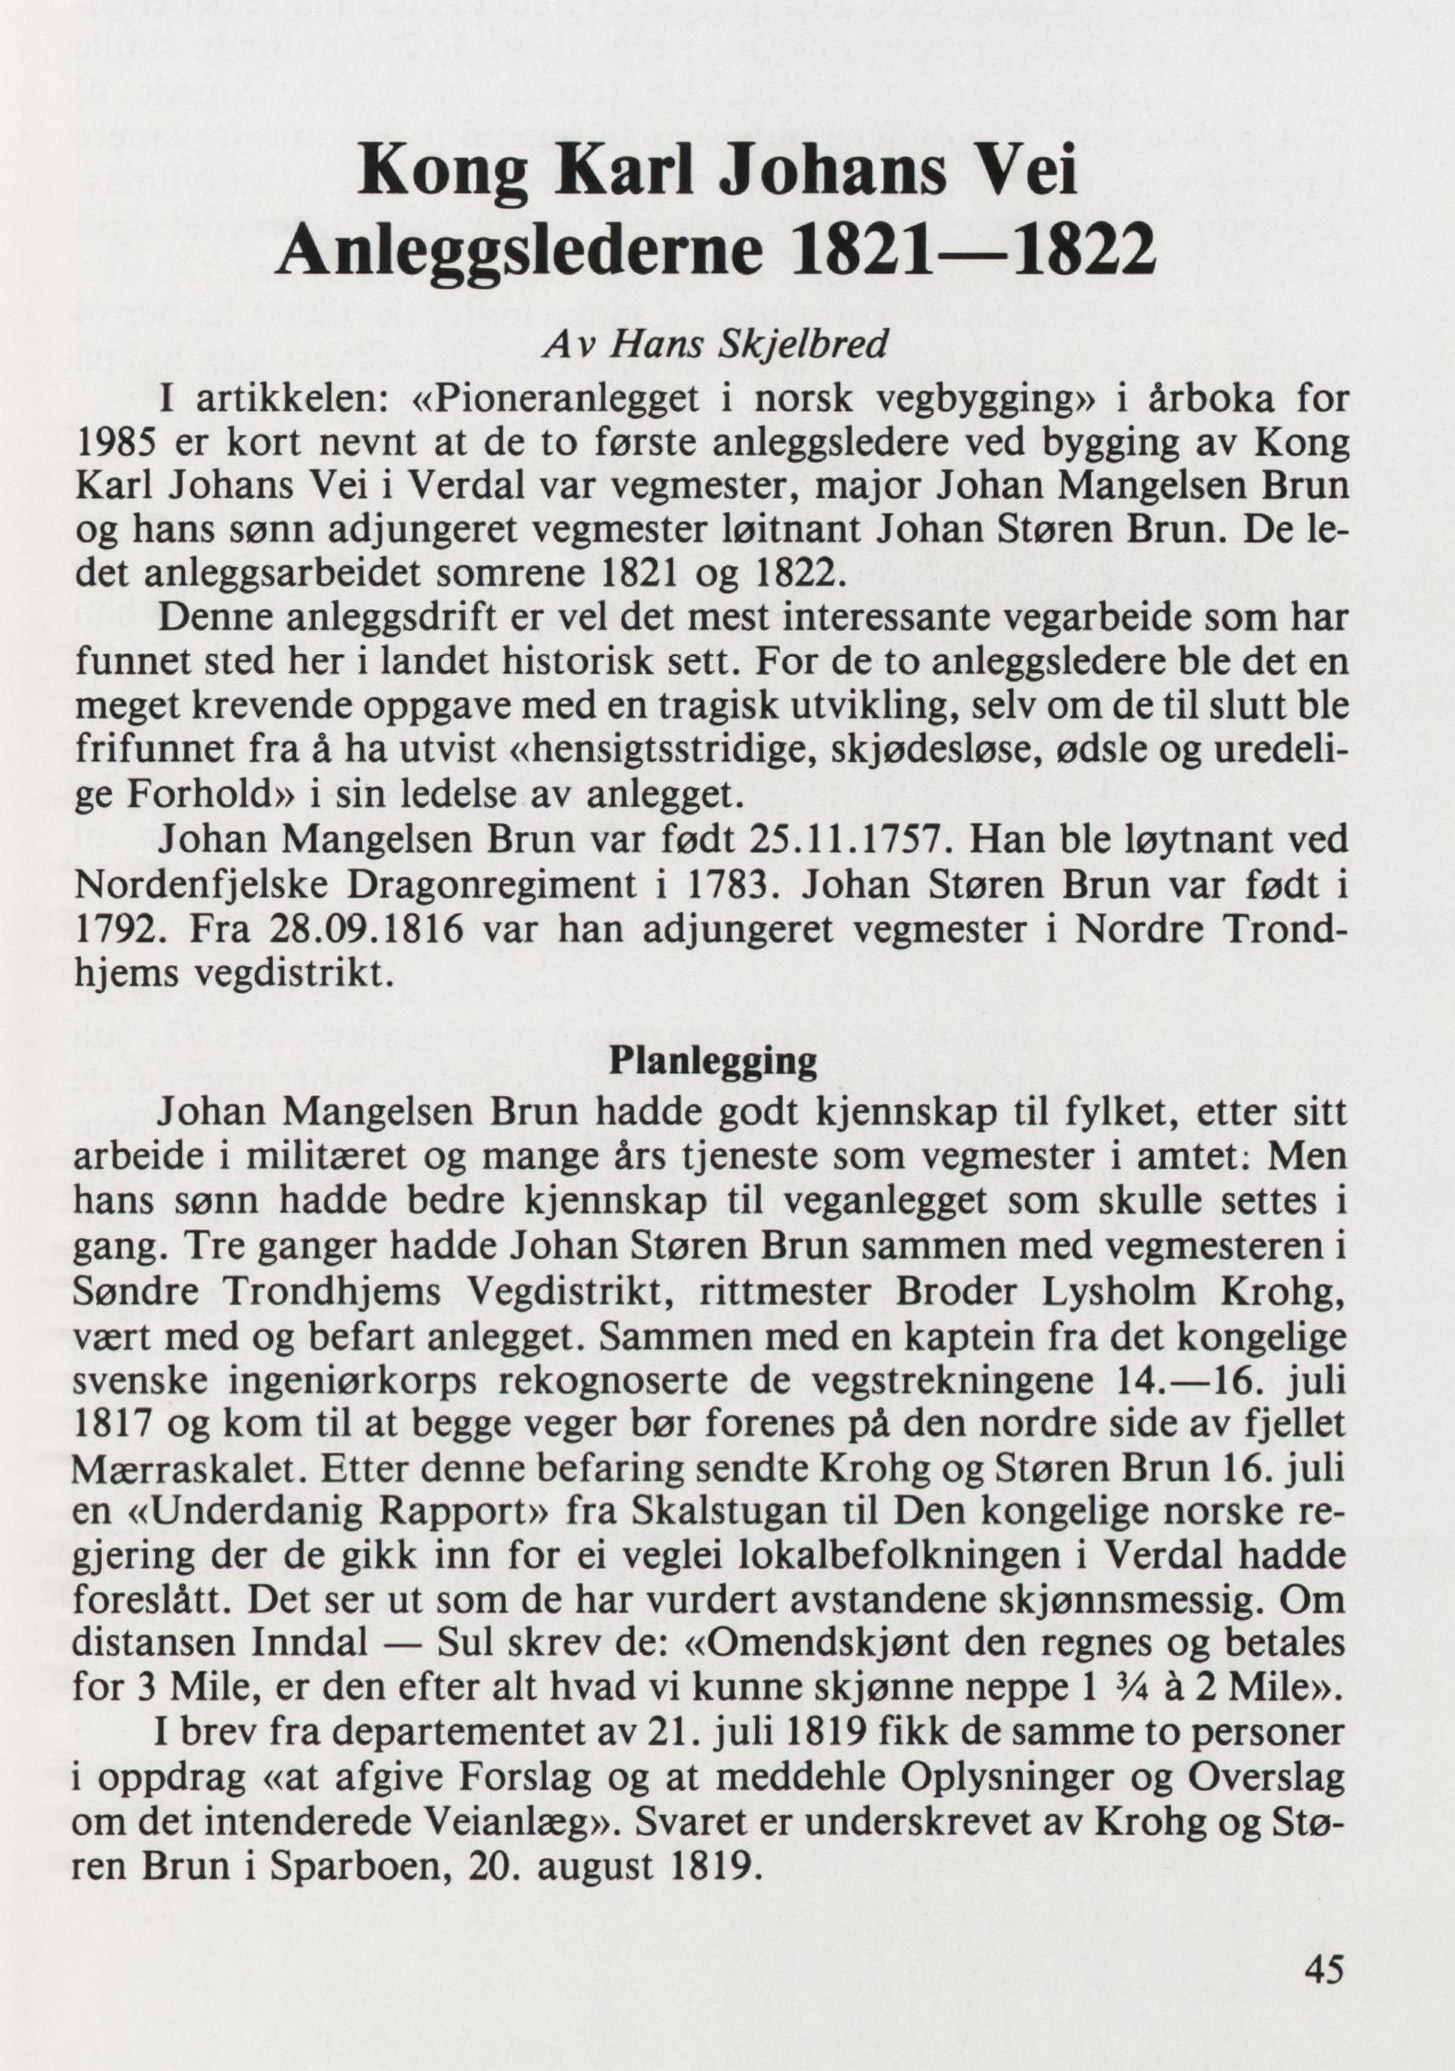 Anleggsledere ved Kong Karl Johans Vei 1821-1822 (Verdal historielags skrifter. 1988 Vol. 15, side 45-51)